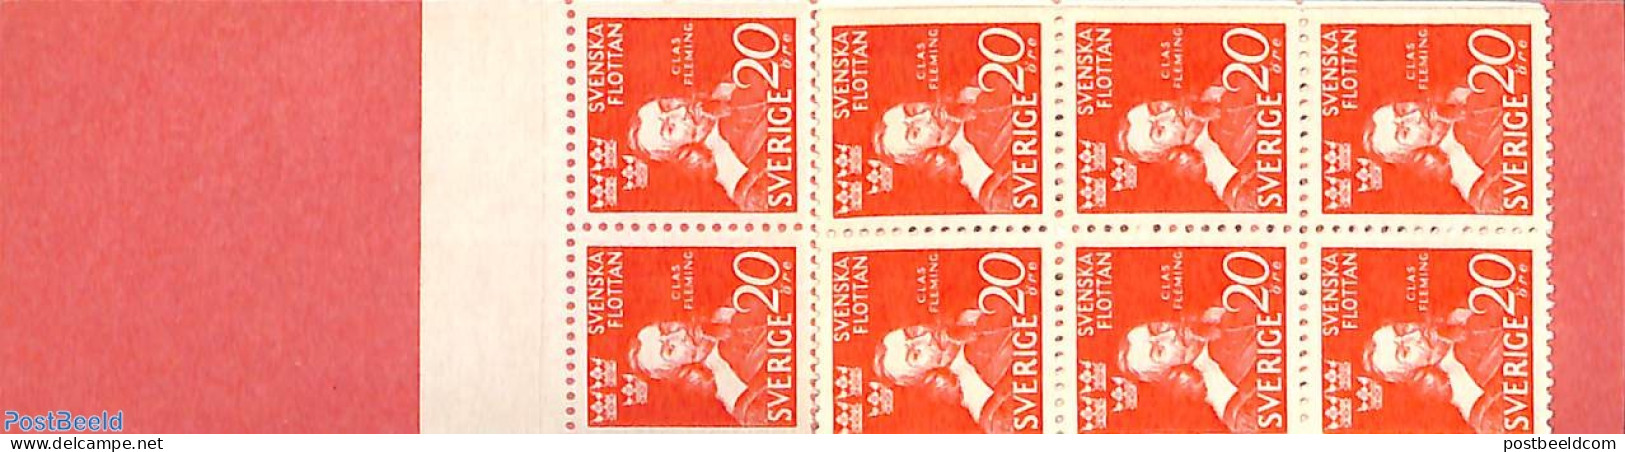 Sweden 1944 Claes Fleming Booklet, Mint NH, Stamp Booklets - Unused Stamps